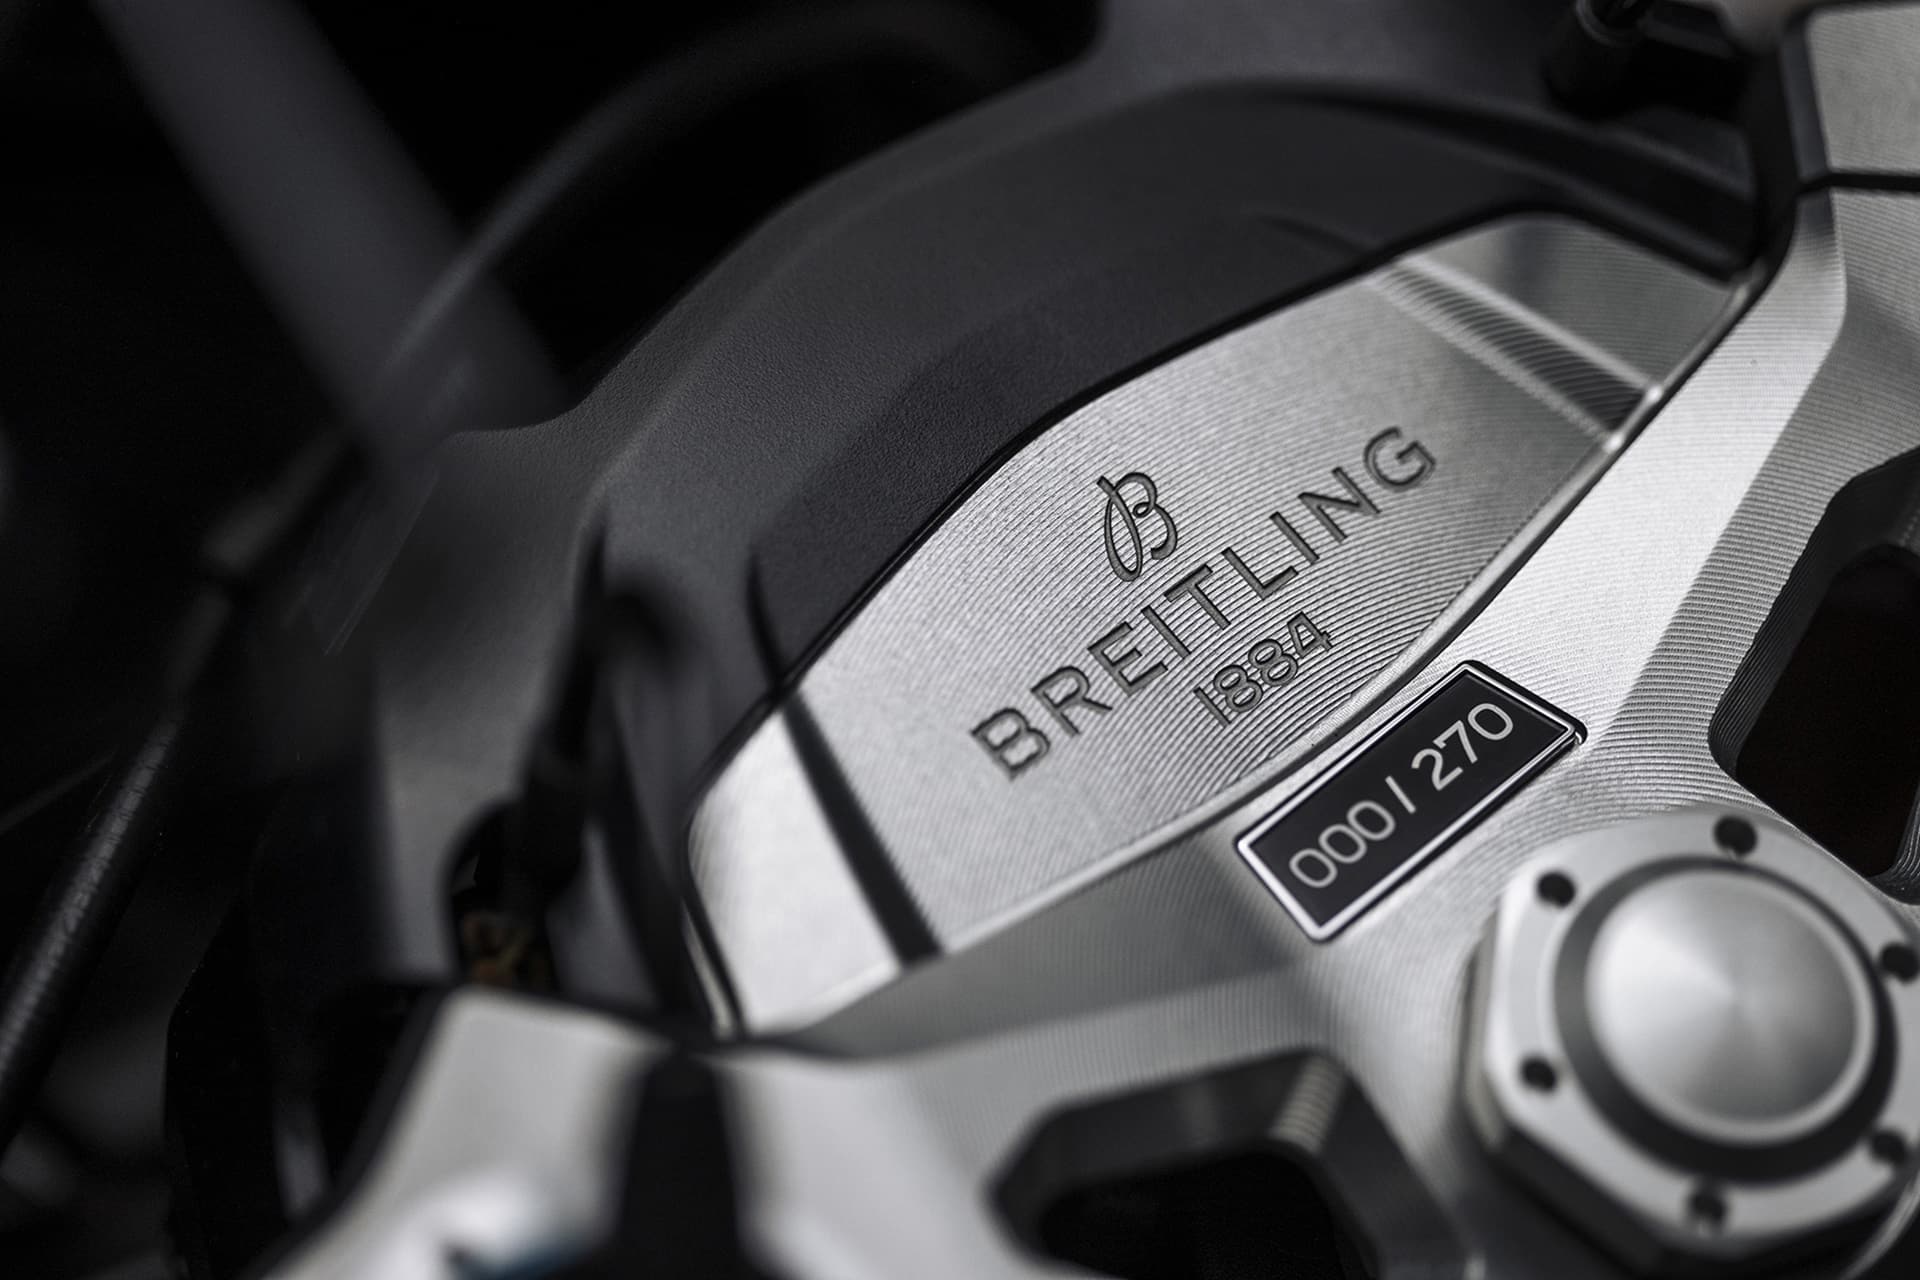 Triumph Speed Triple 1200 RR Breitling: Fusión de tecnología y estilo premium